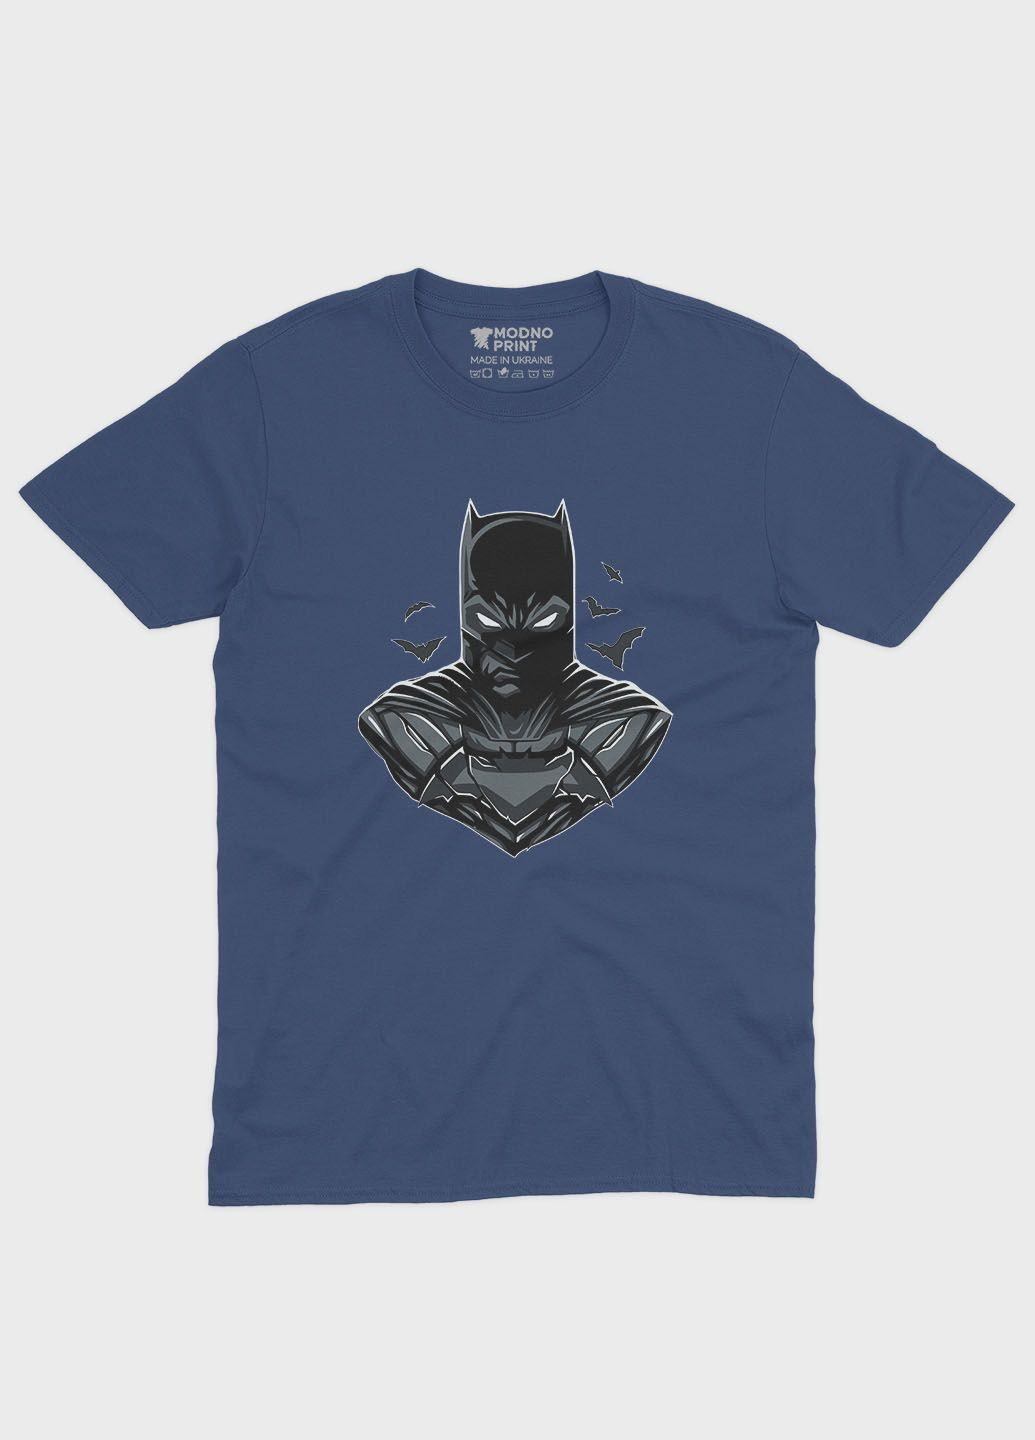 Темно-синяя летняя женская футболка с принтом супергероя - бэтмен (ts001-1-nav-006-003-026-f) Modno